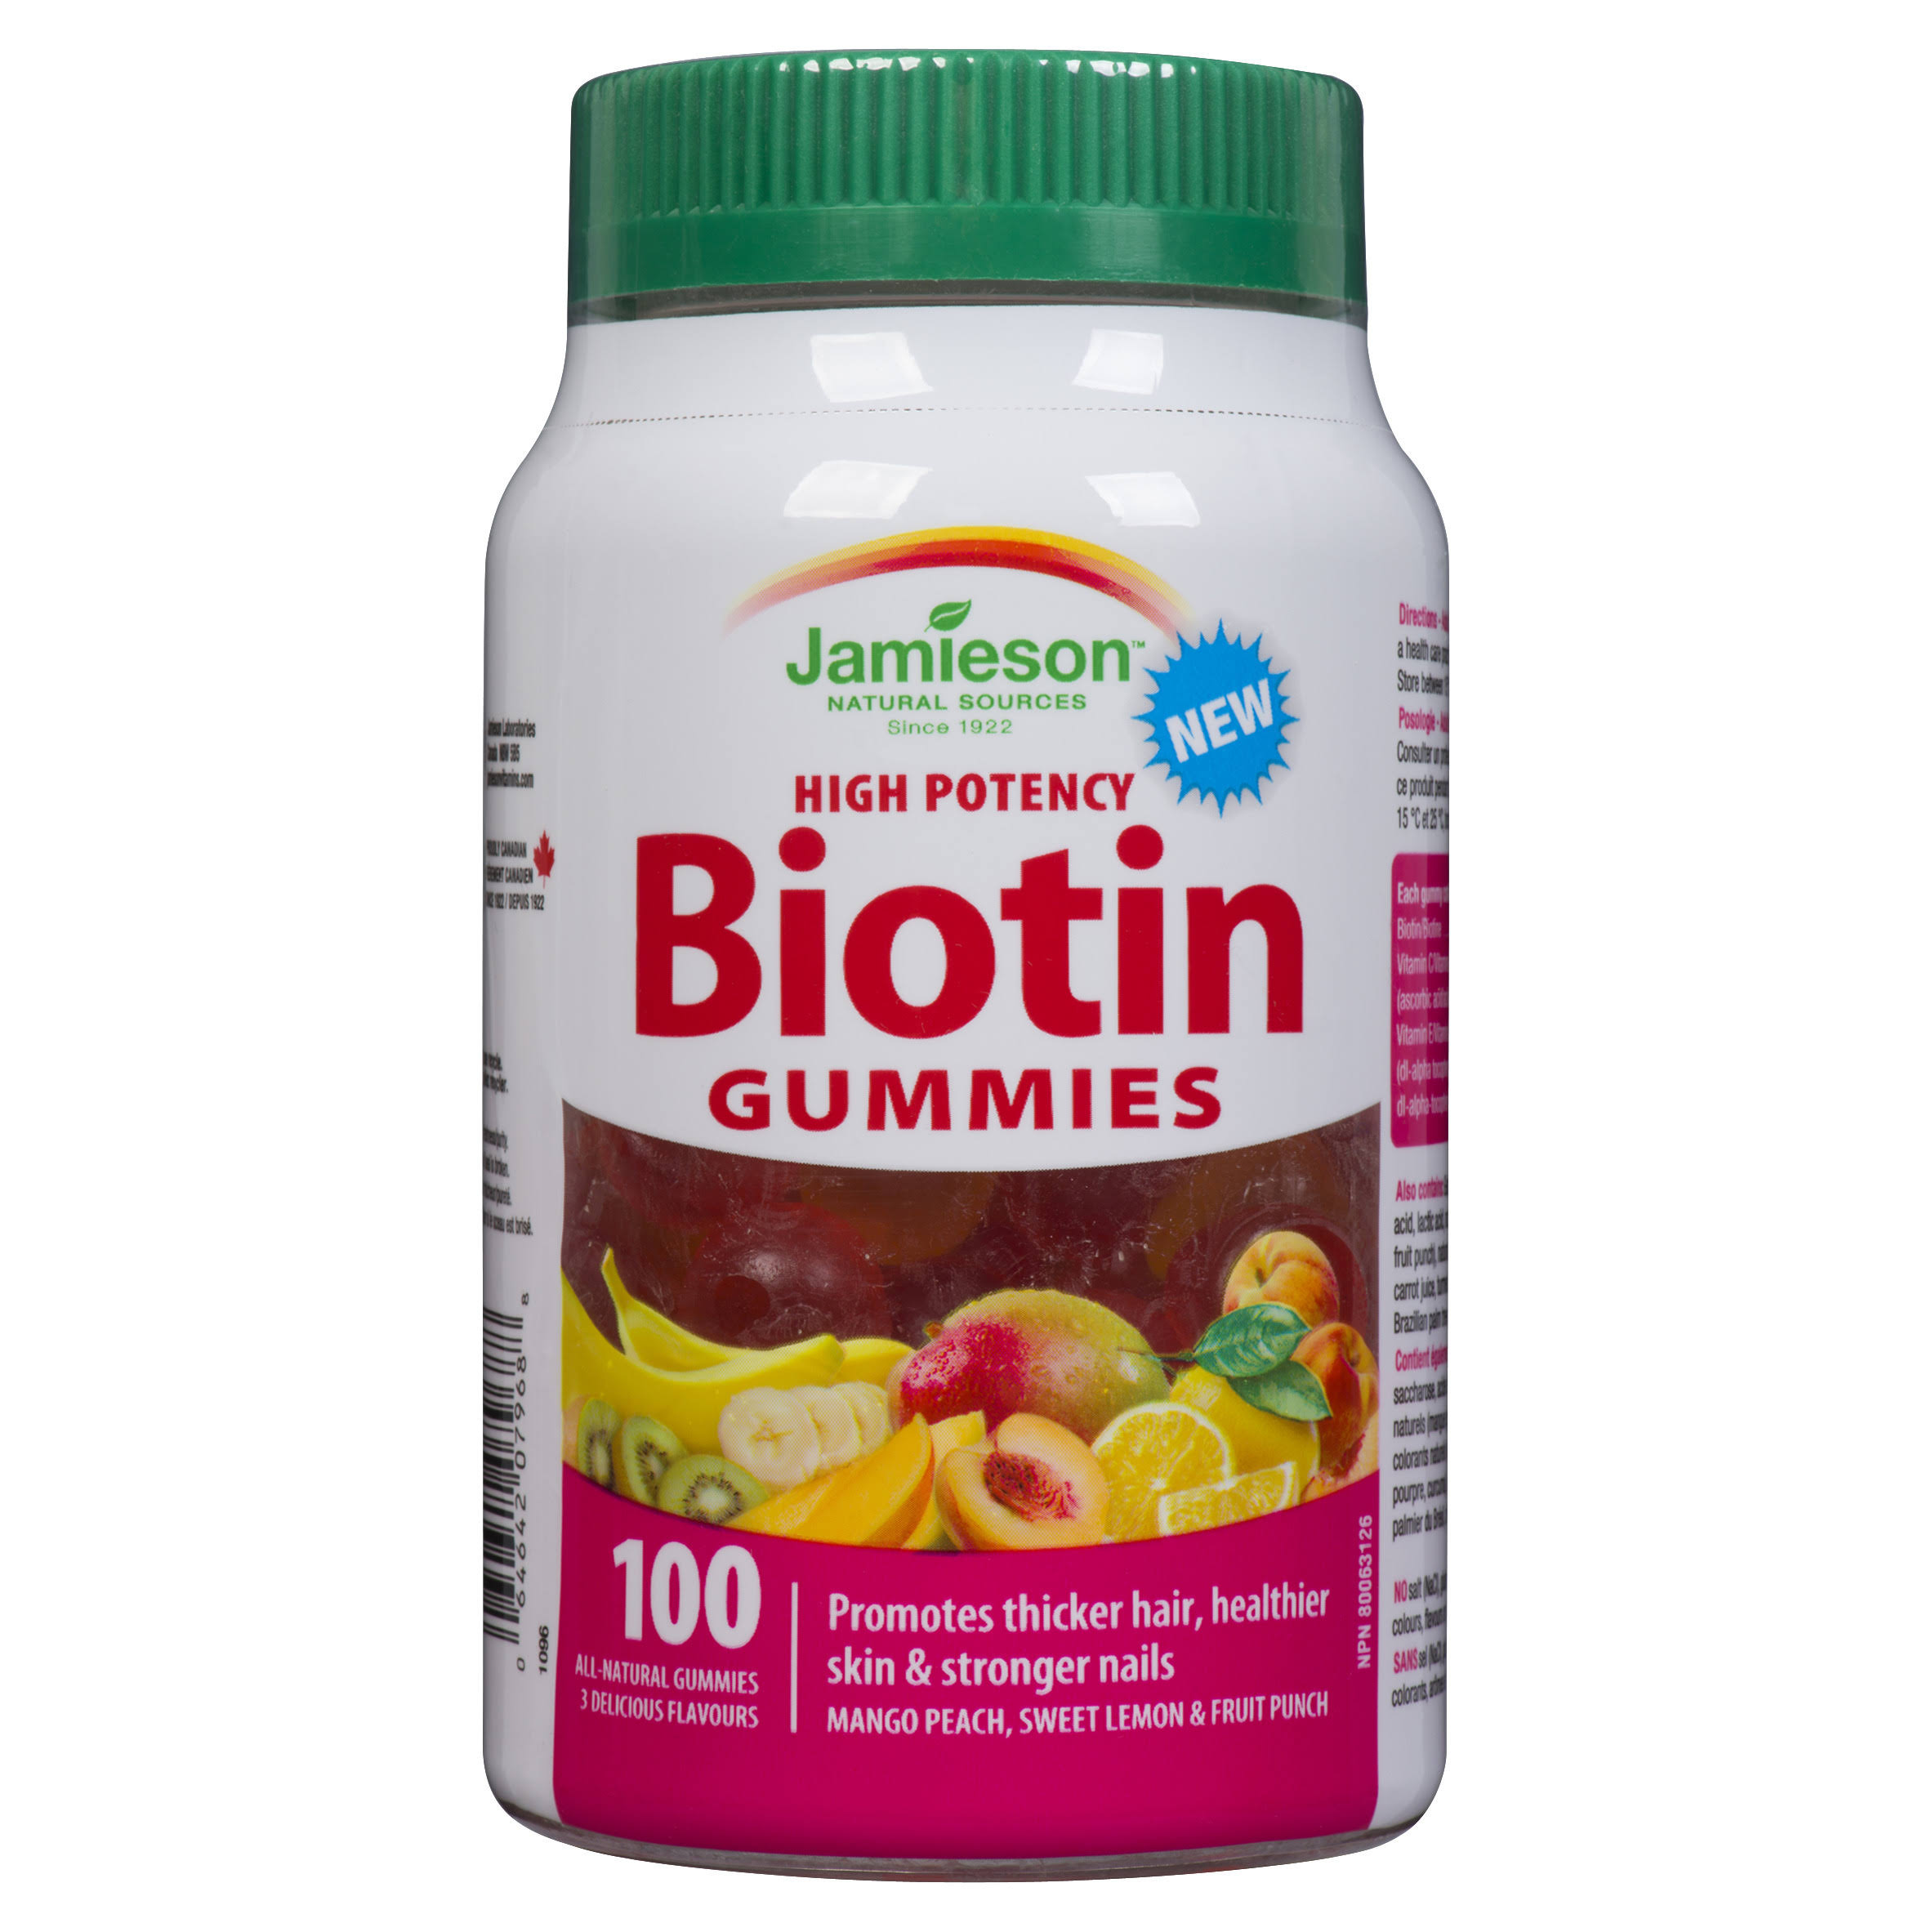 Jamieson Biotin Gummies Dietary Supplement - 100ct